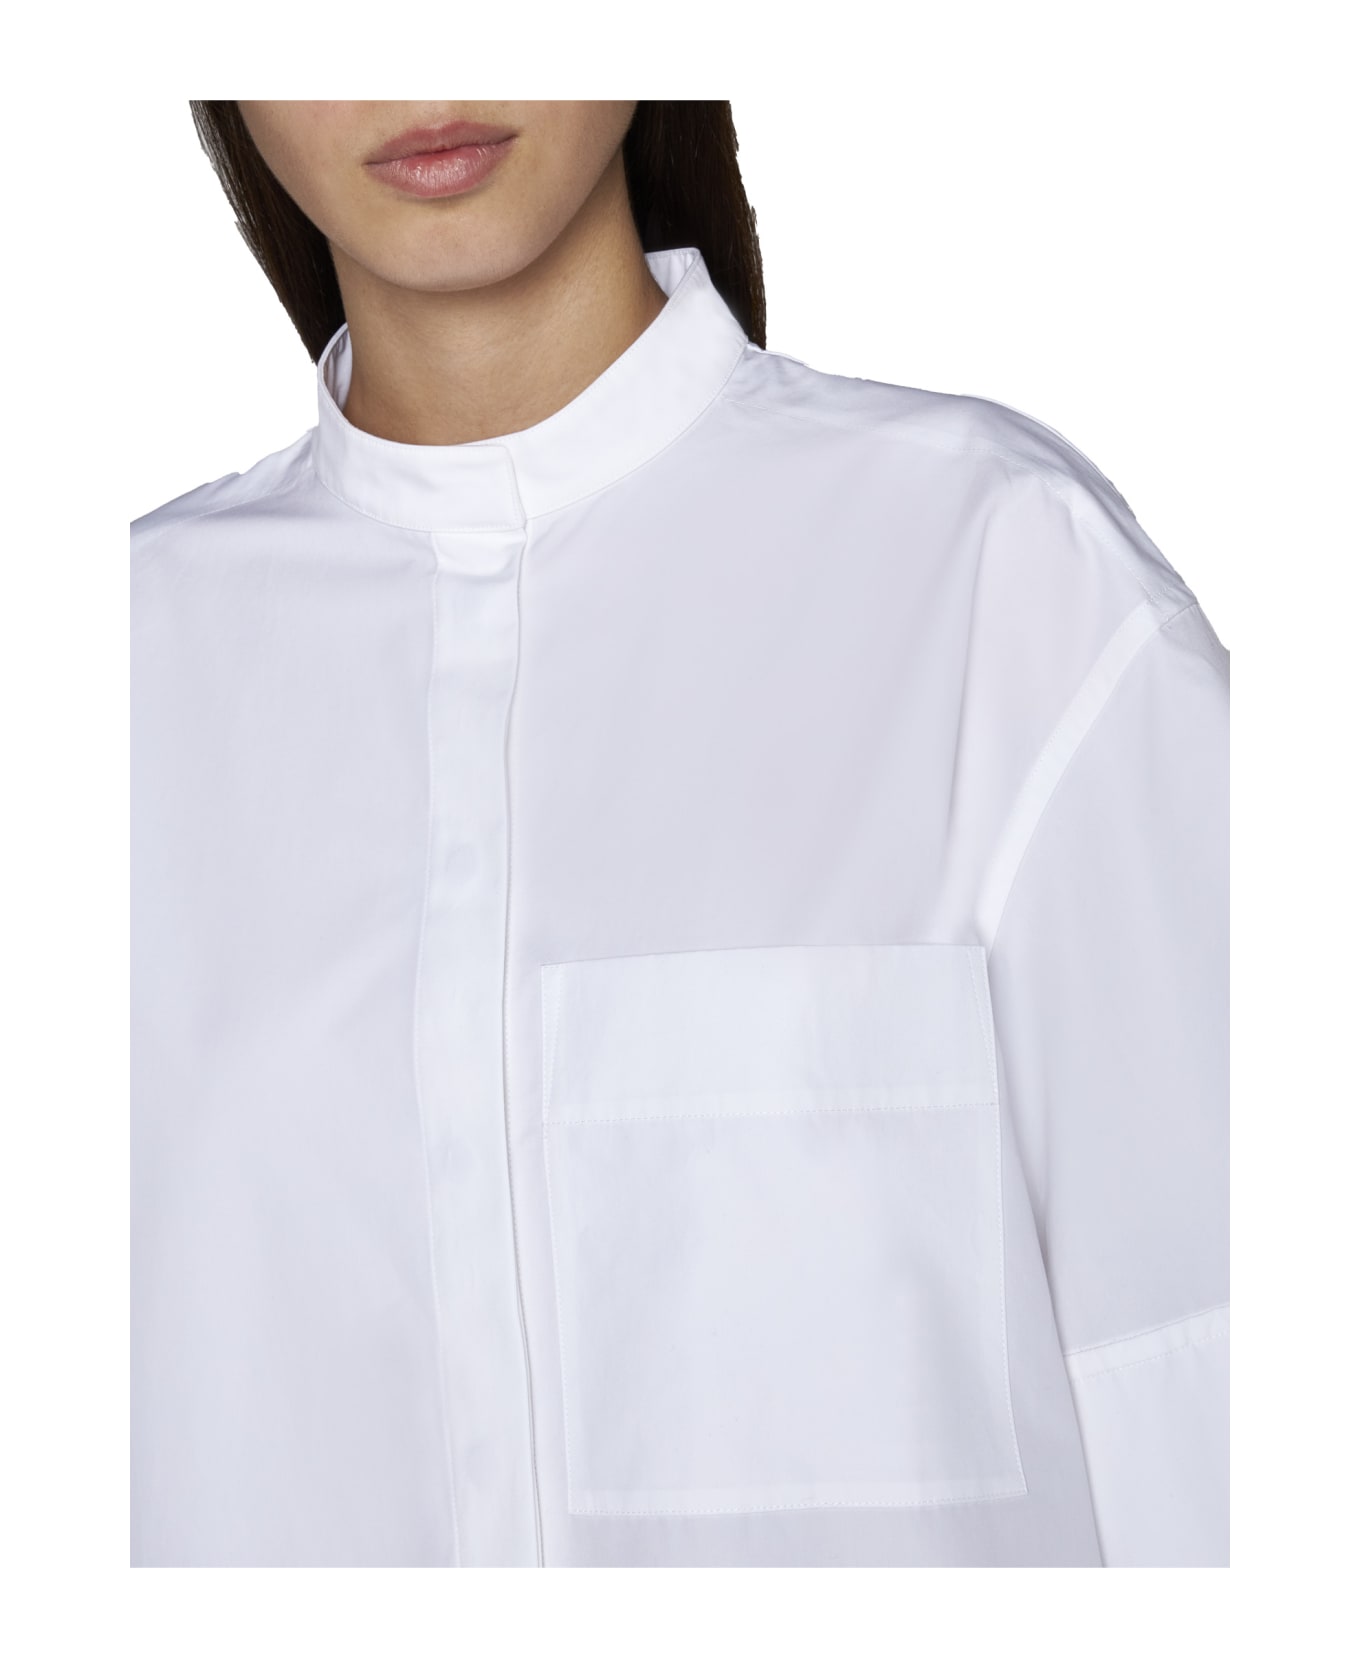 Jil Sander Shirt - Bianco シャツ